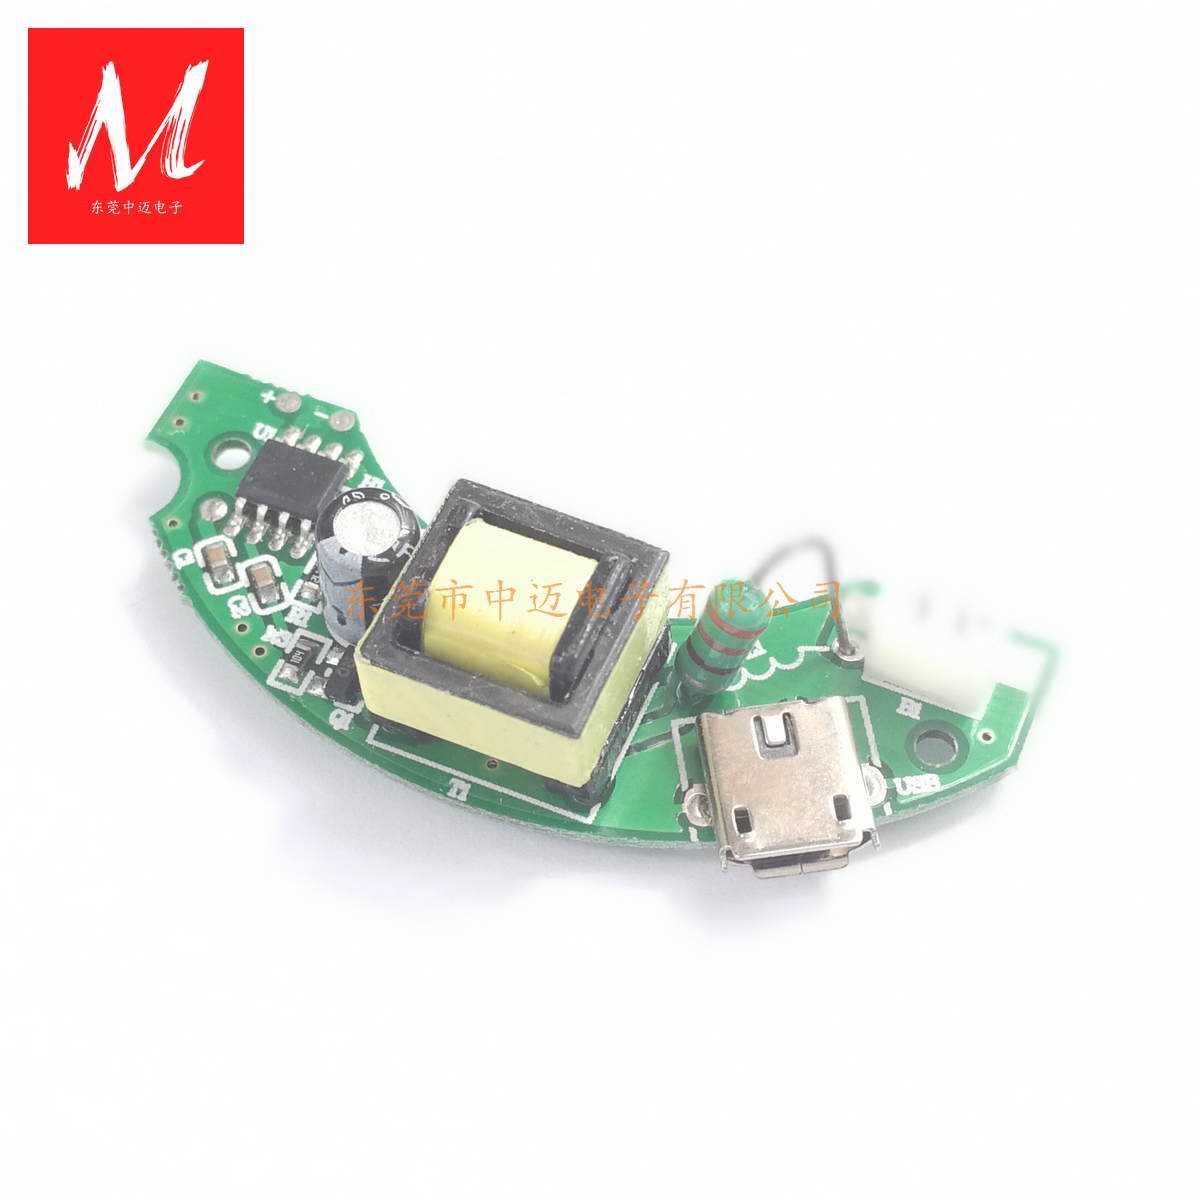 雾化器加湿器的驱动线路微孔雾化片驱动电路板 5V USB接口 雾化器加湿器的驱动线路